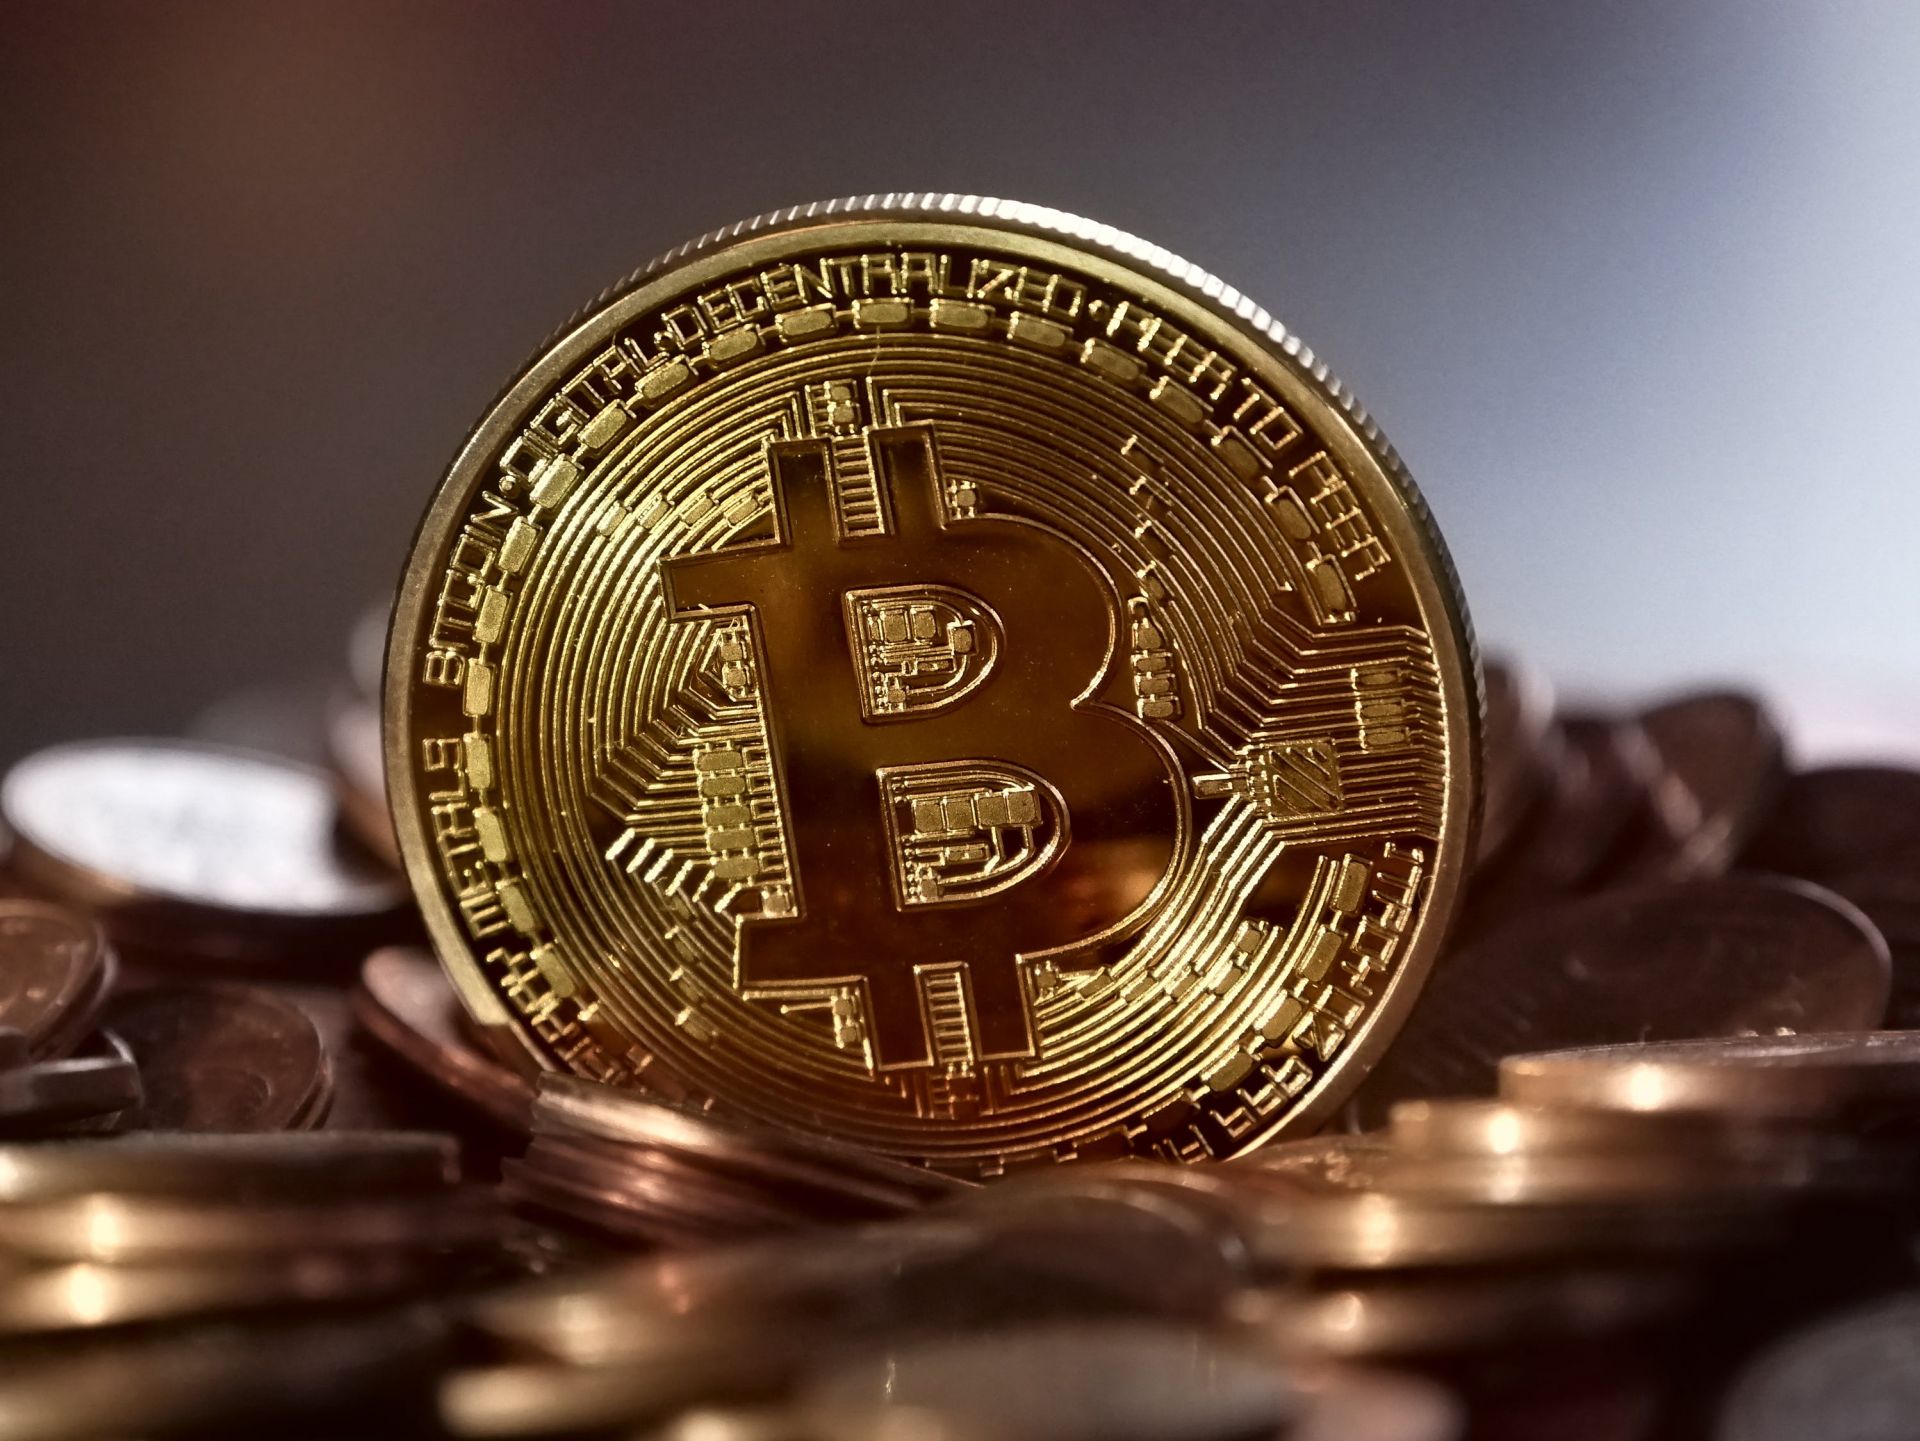 Analis Prediksi Harga Bitcoin Akan Kembali Merangkak Naik pada Akhir Tahun